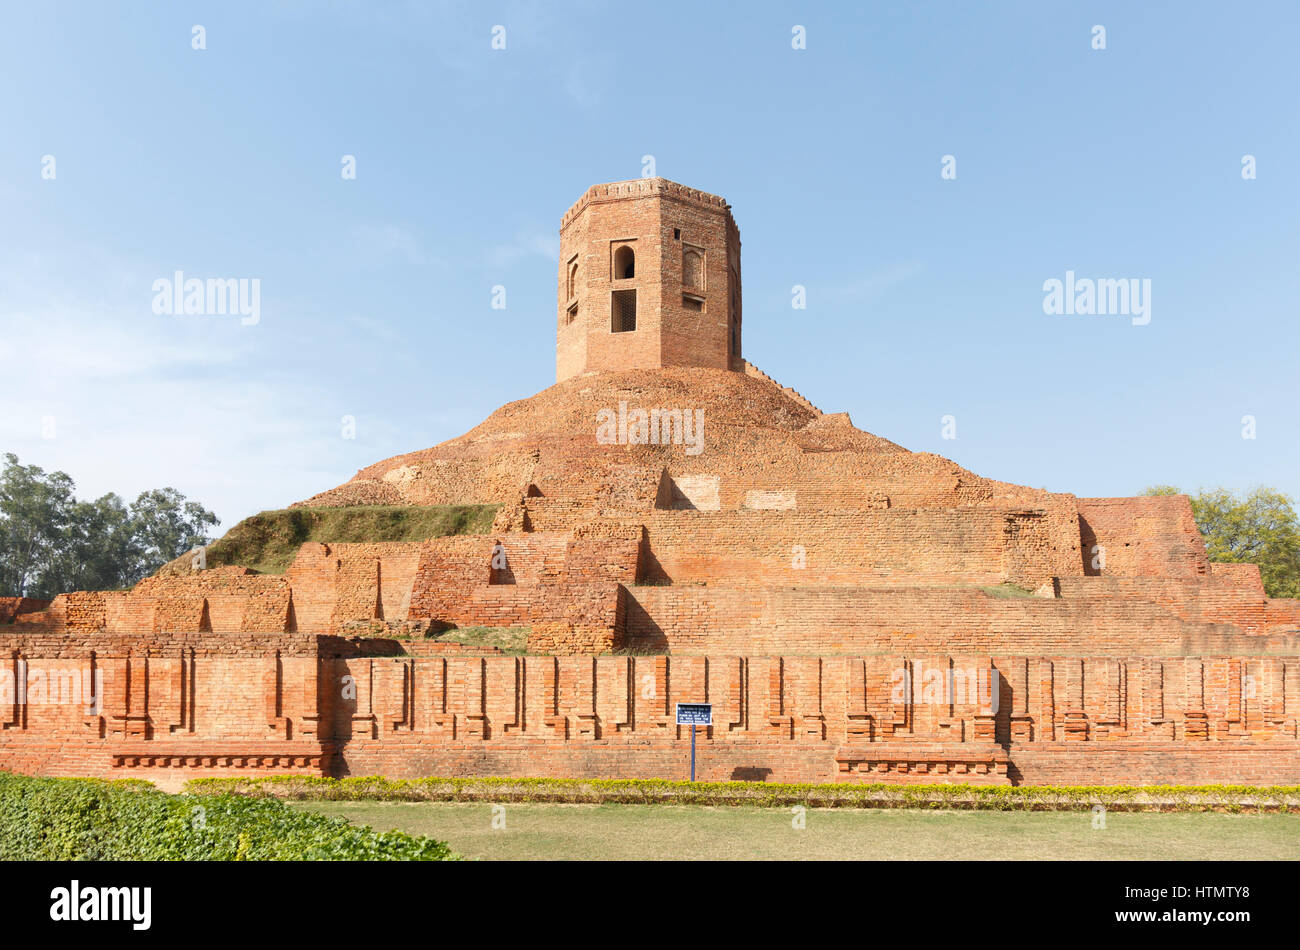 Chaukhandi Stupa, Sarnath, India Stock Photo